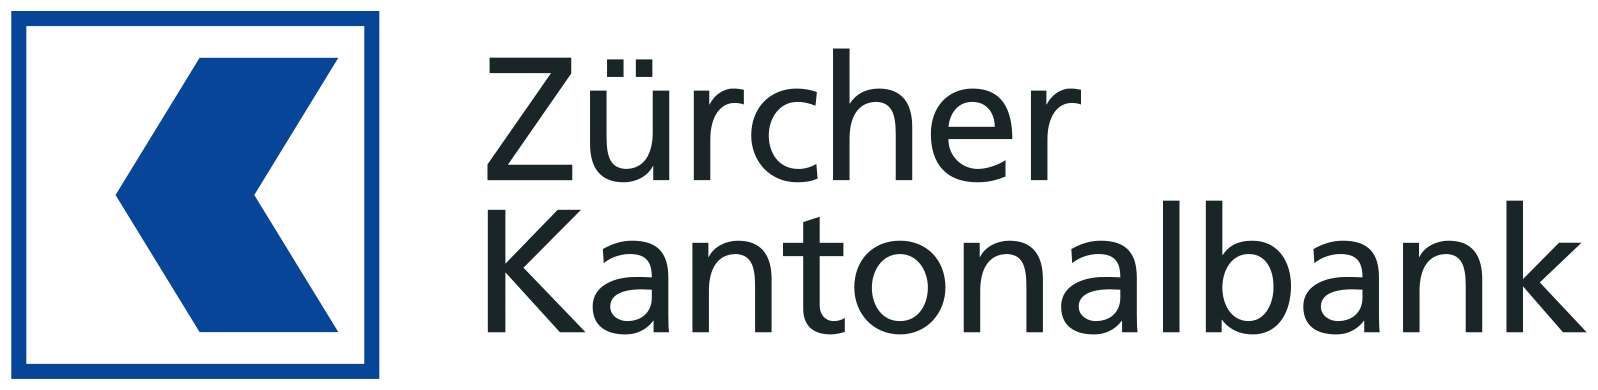 Zuercher_Kantonalbank_logo.svg